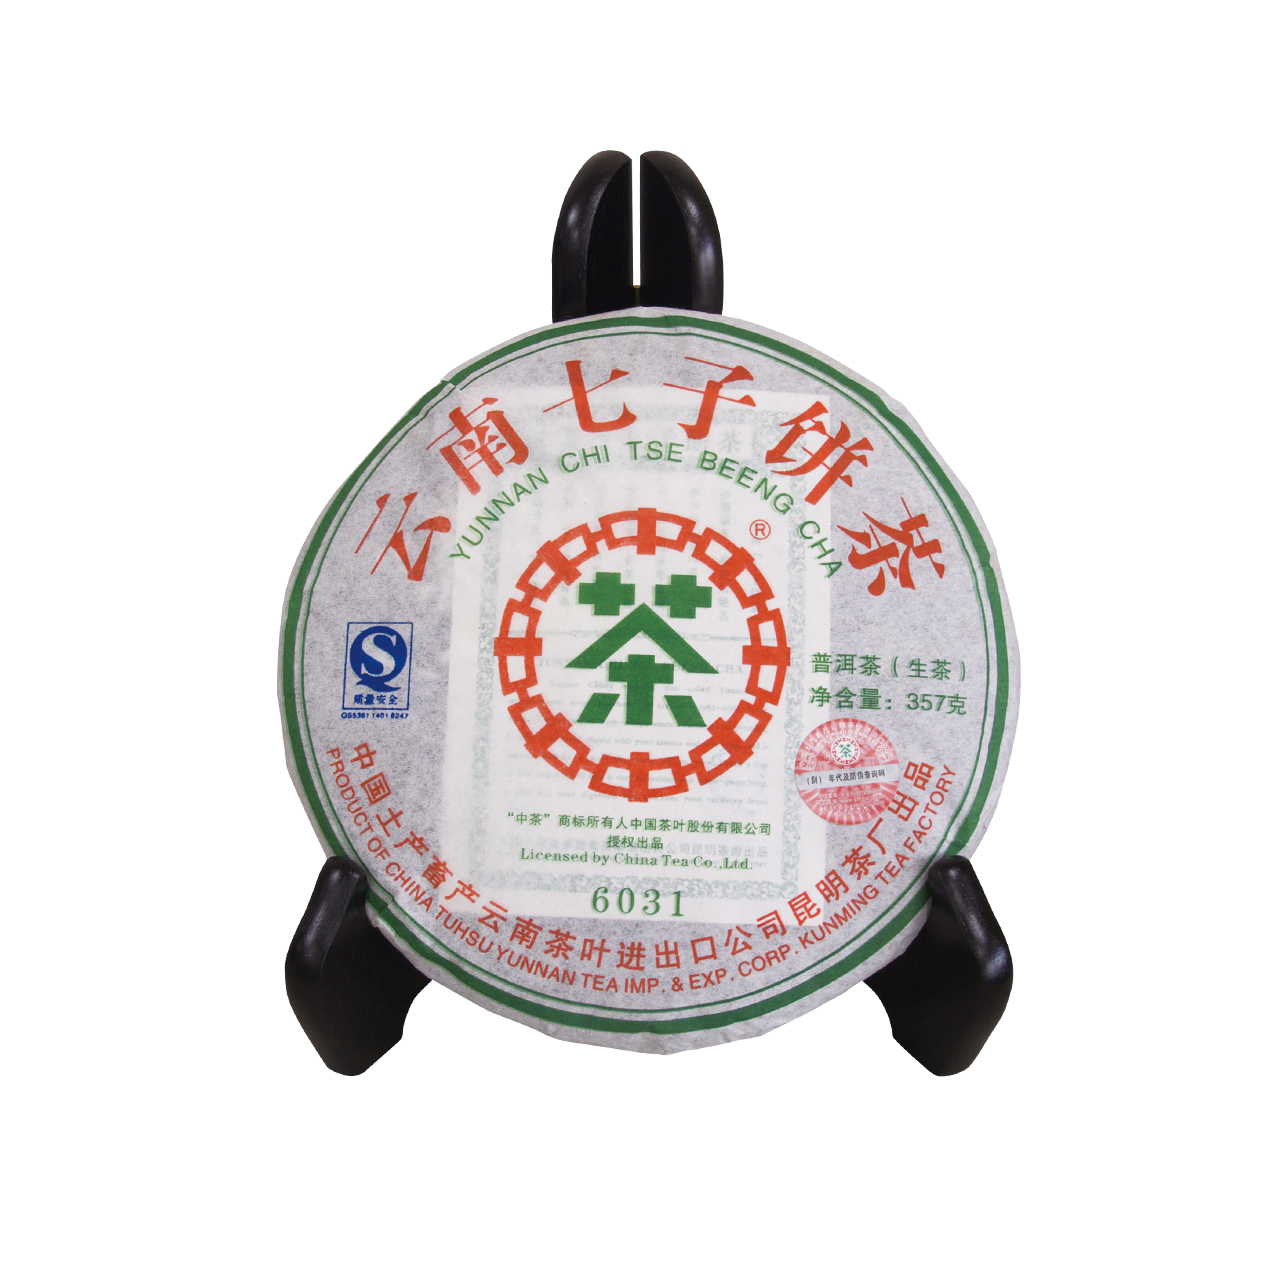 雲南七子餅茶(6031)(生茶)